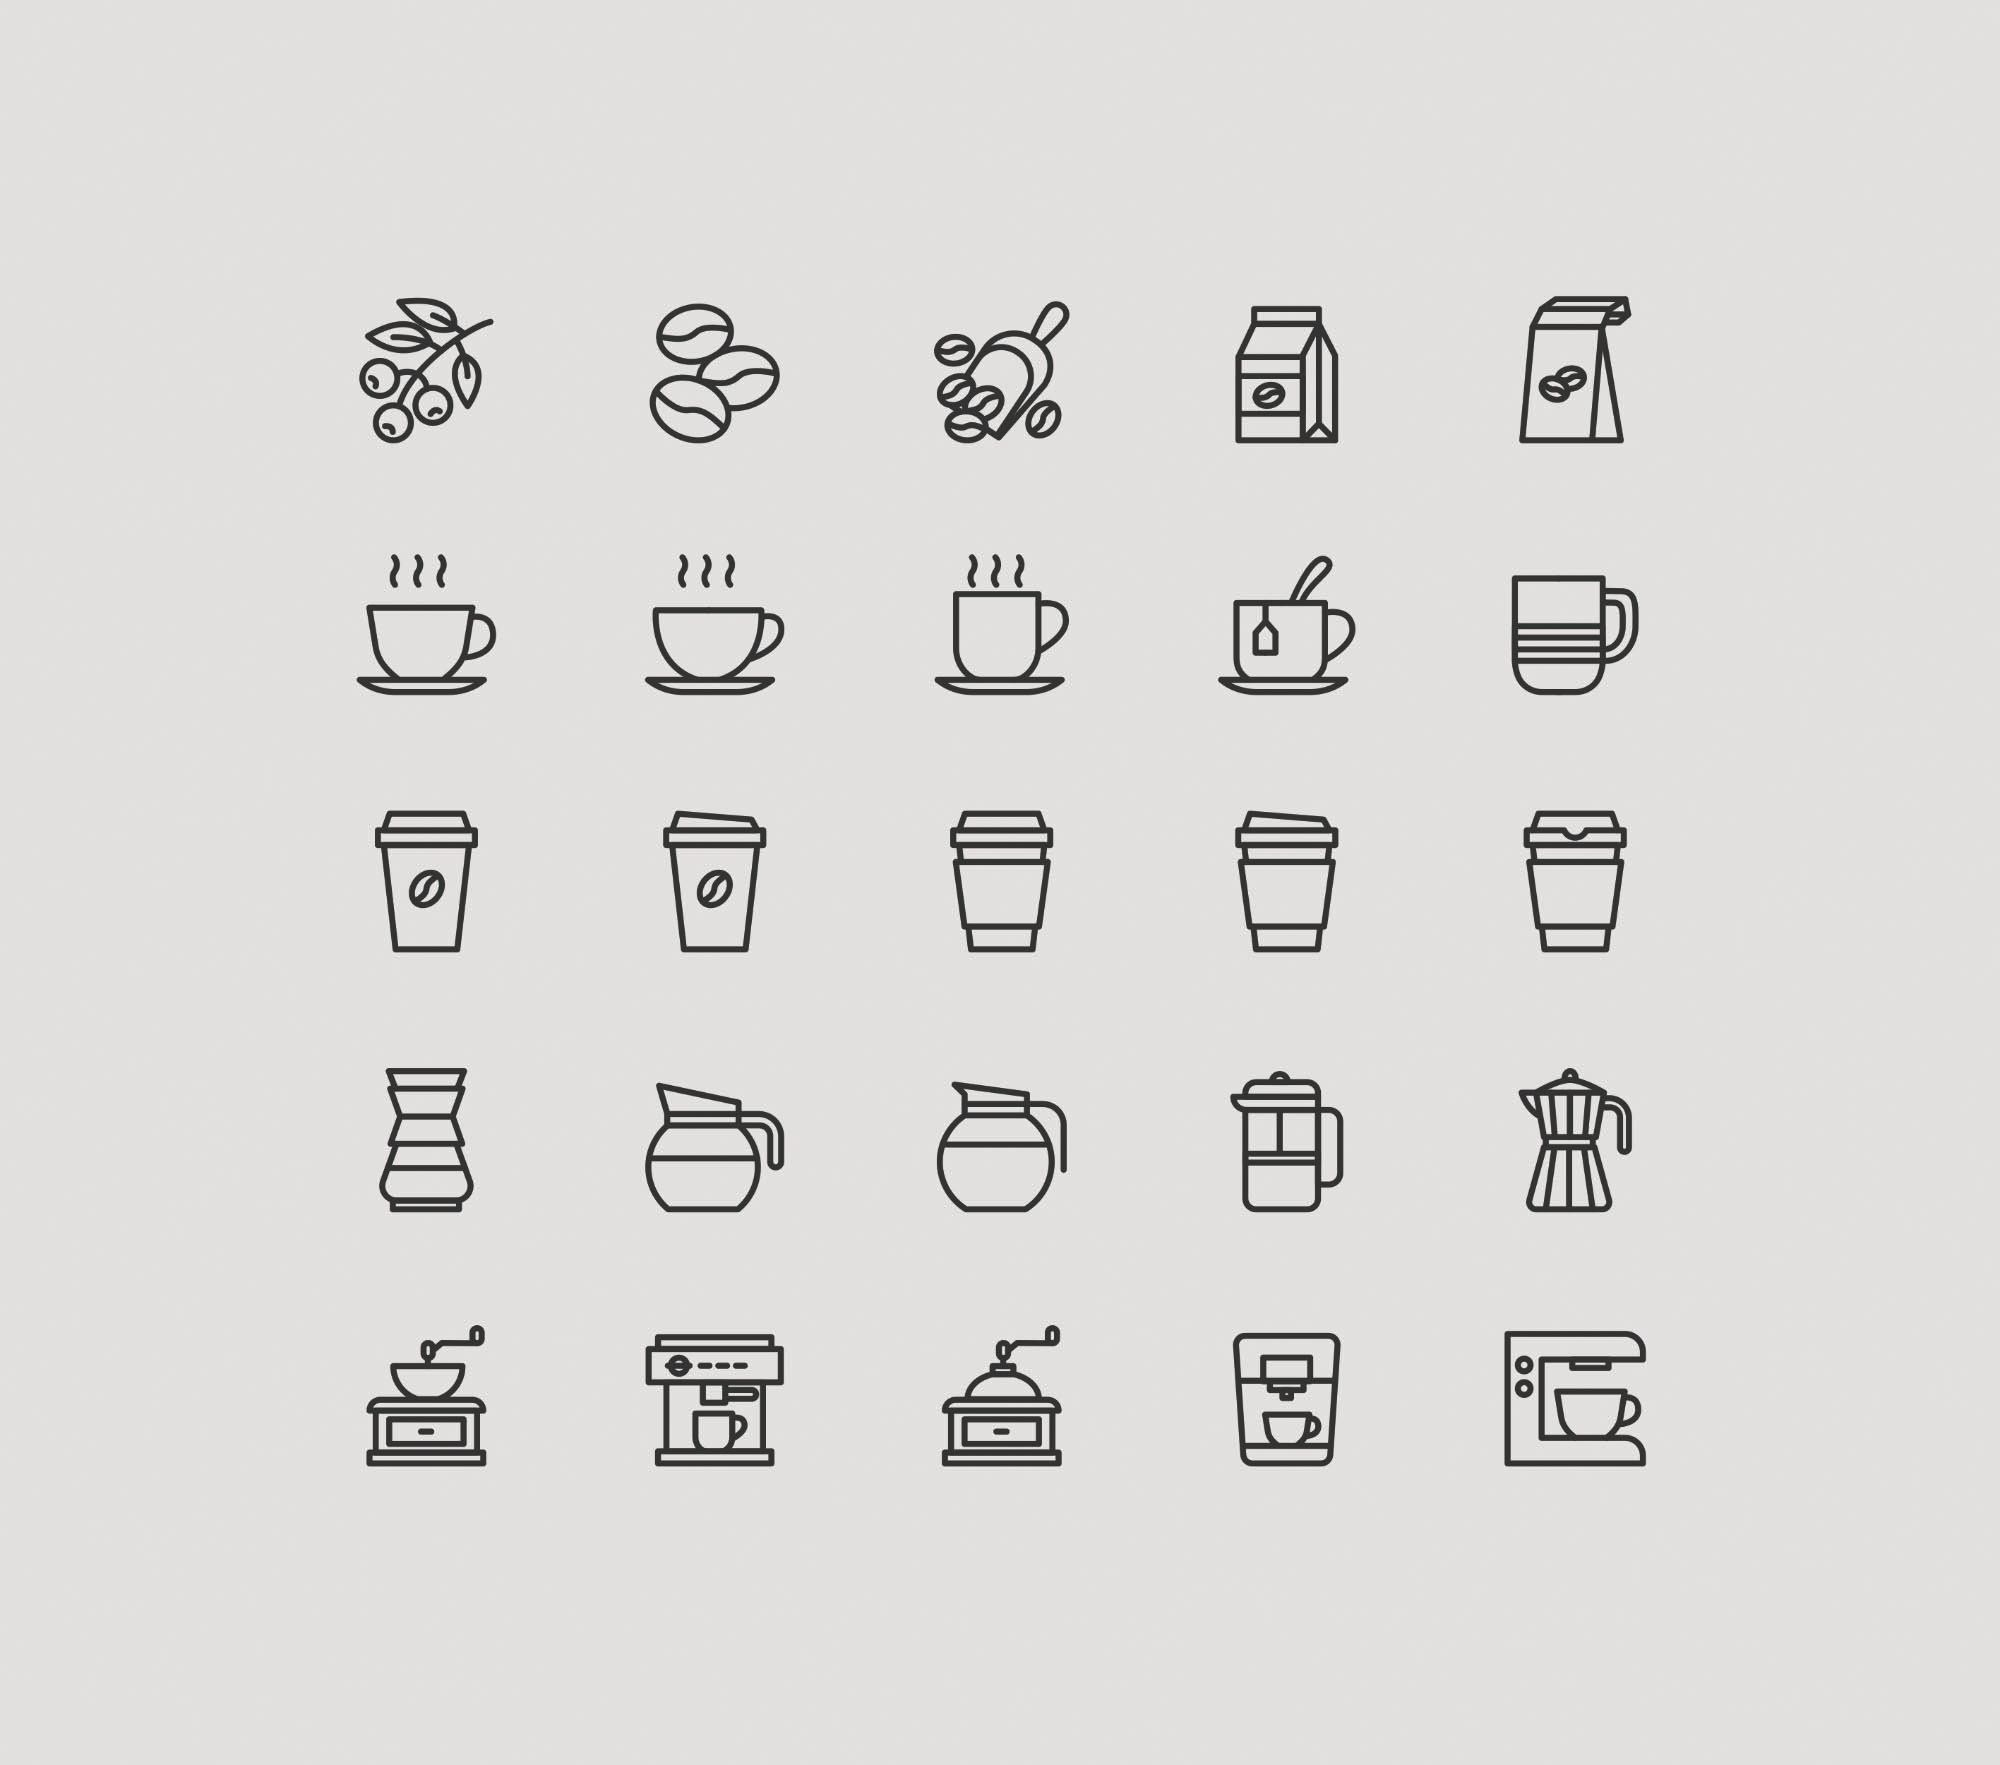 25枚咖啡主题矢量图标素材 25 Coffee Theme Icons – Vector .Ai插图(1)